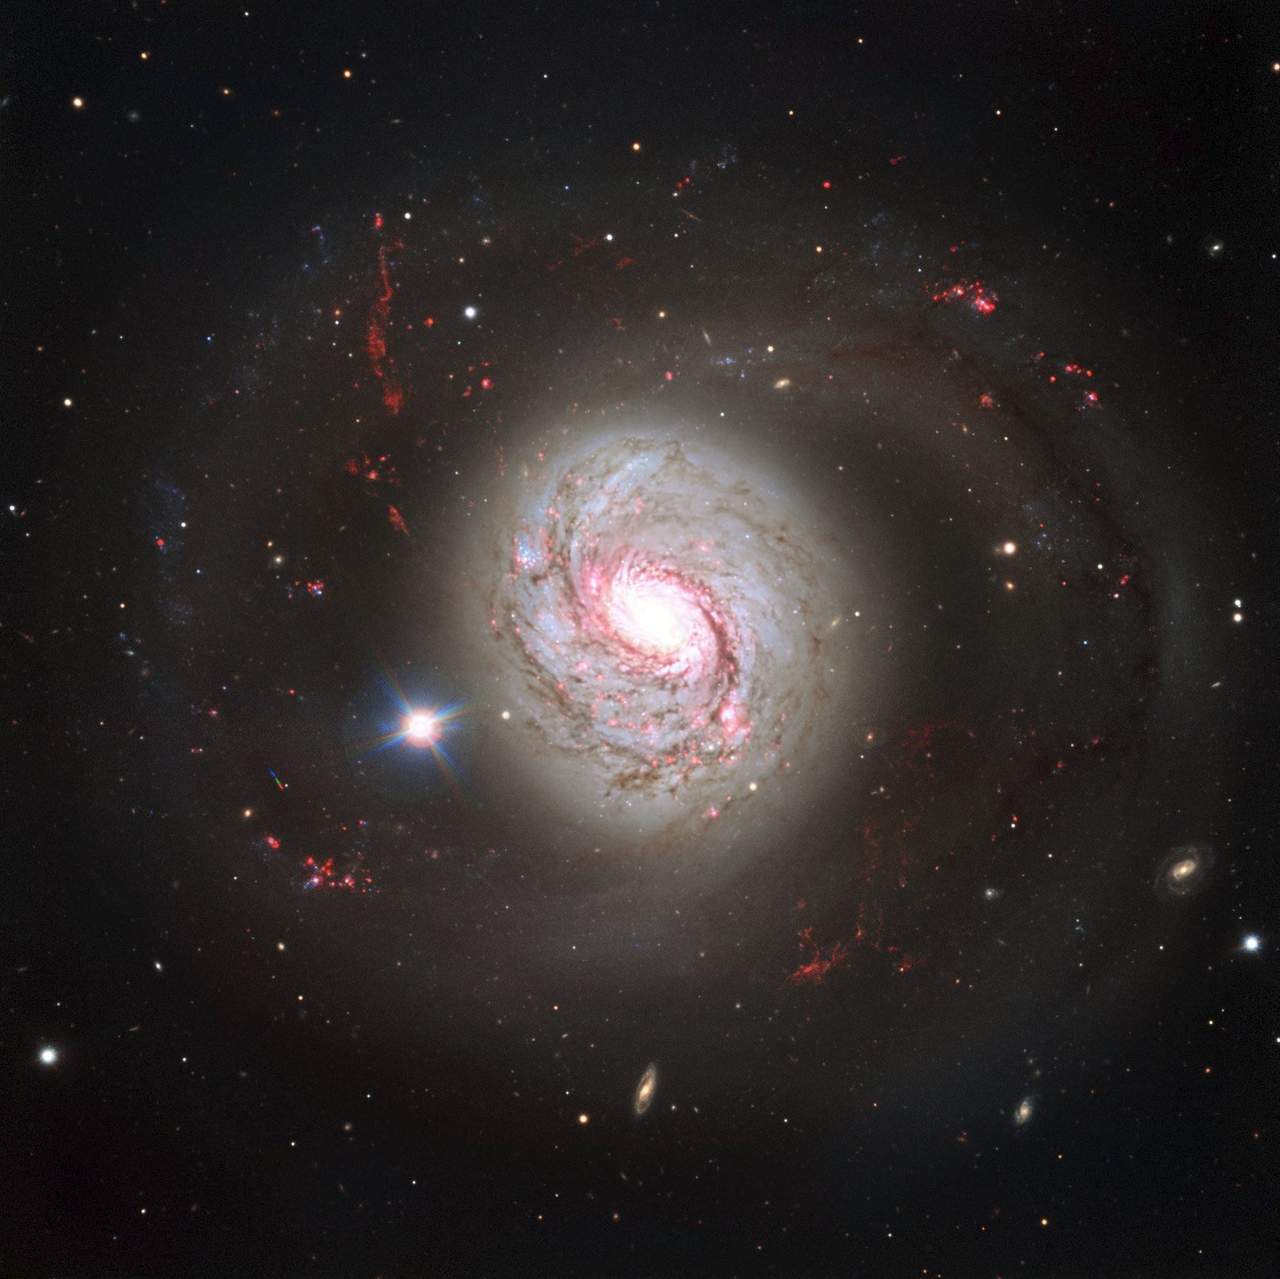 Telescopio espacial Hubble muestra galaxia con núcleo activo. Noticias en tiempo real